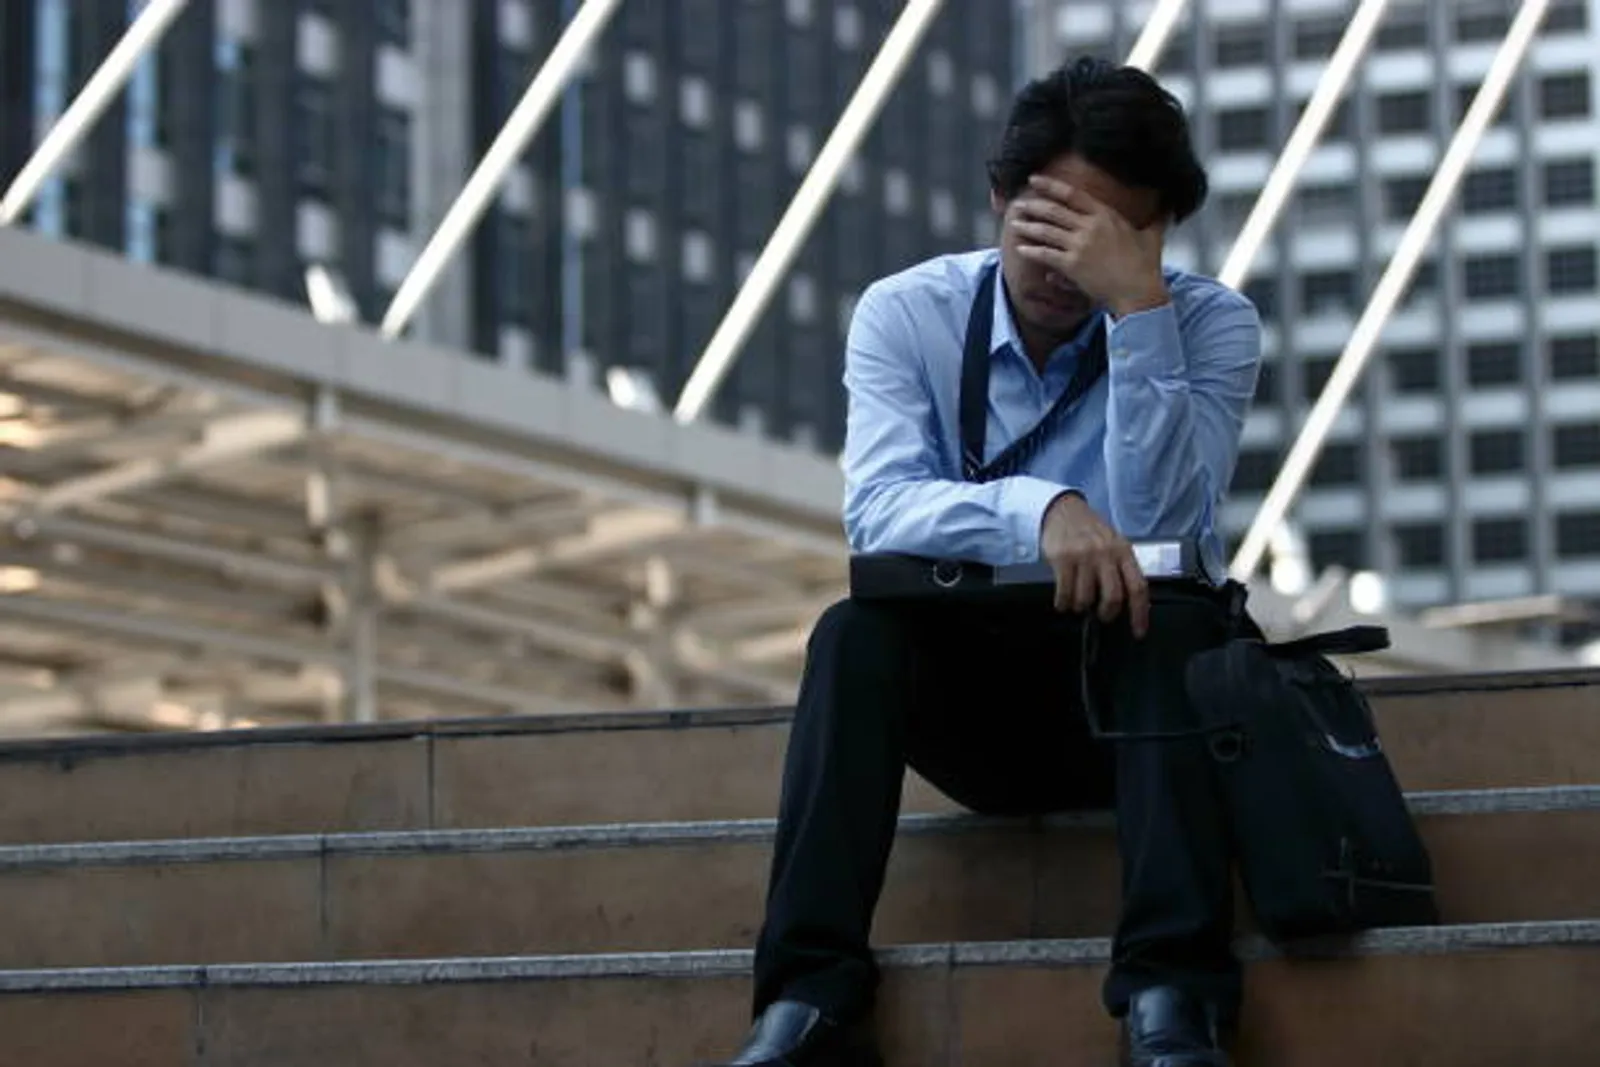 Jepang Krisis Anak Muda, Apa Perlu Kita Pindah ke Jepang, Nih?